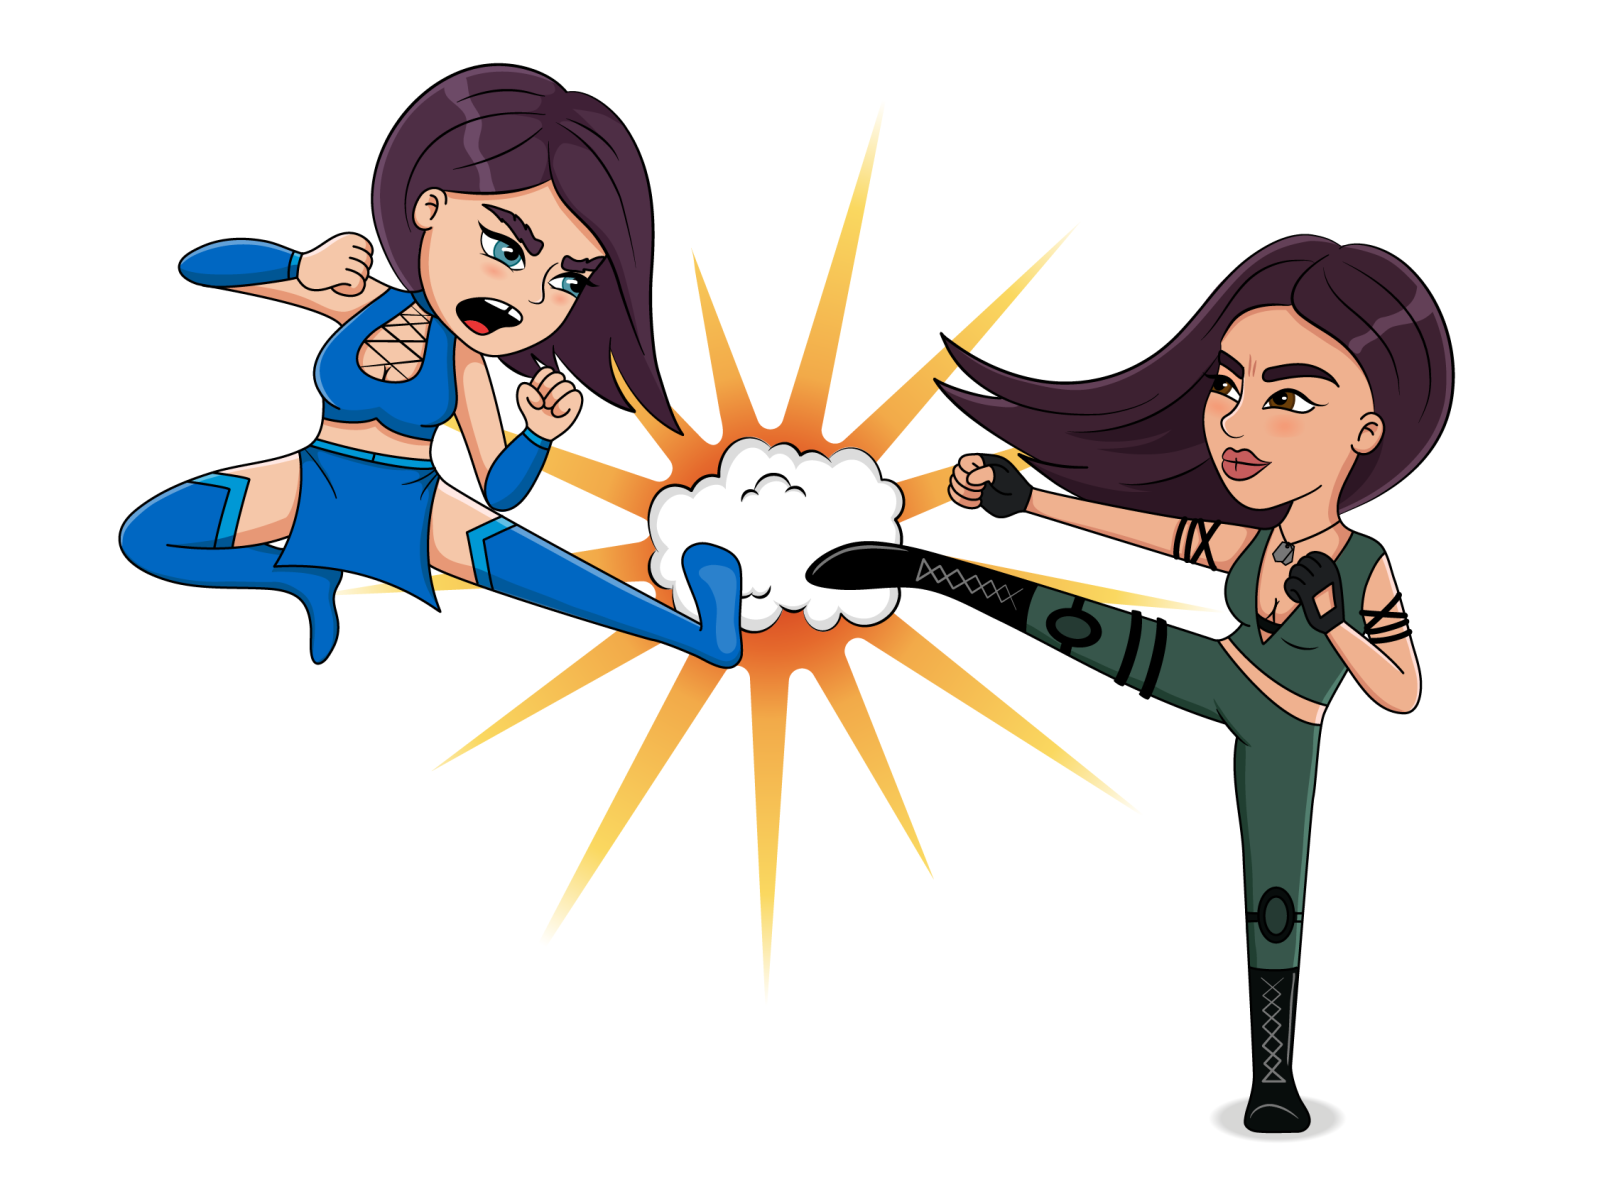 Mortal Kombat. Women's league. vs fight emotion pose mortal kombat vector illustration illustrator cartoon character cartoon character design characterdesign character girl woman art